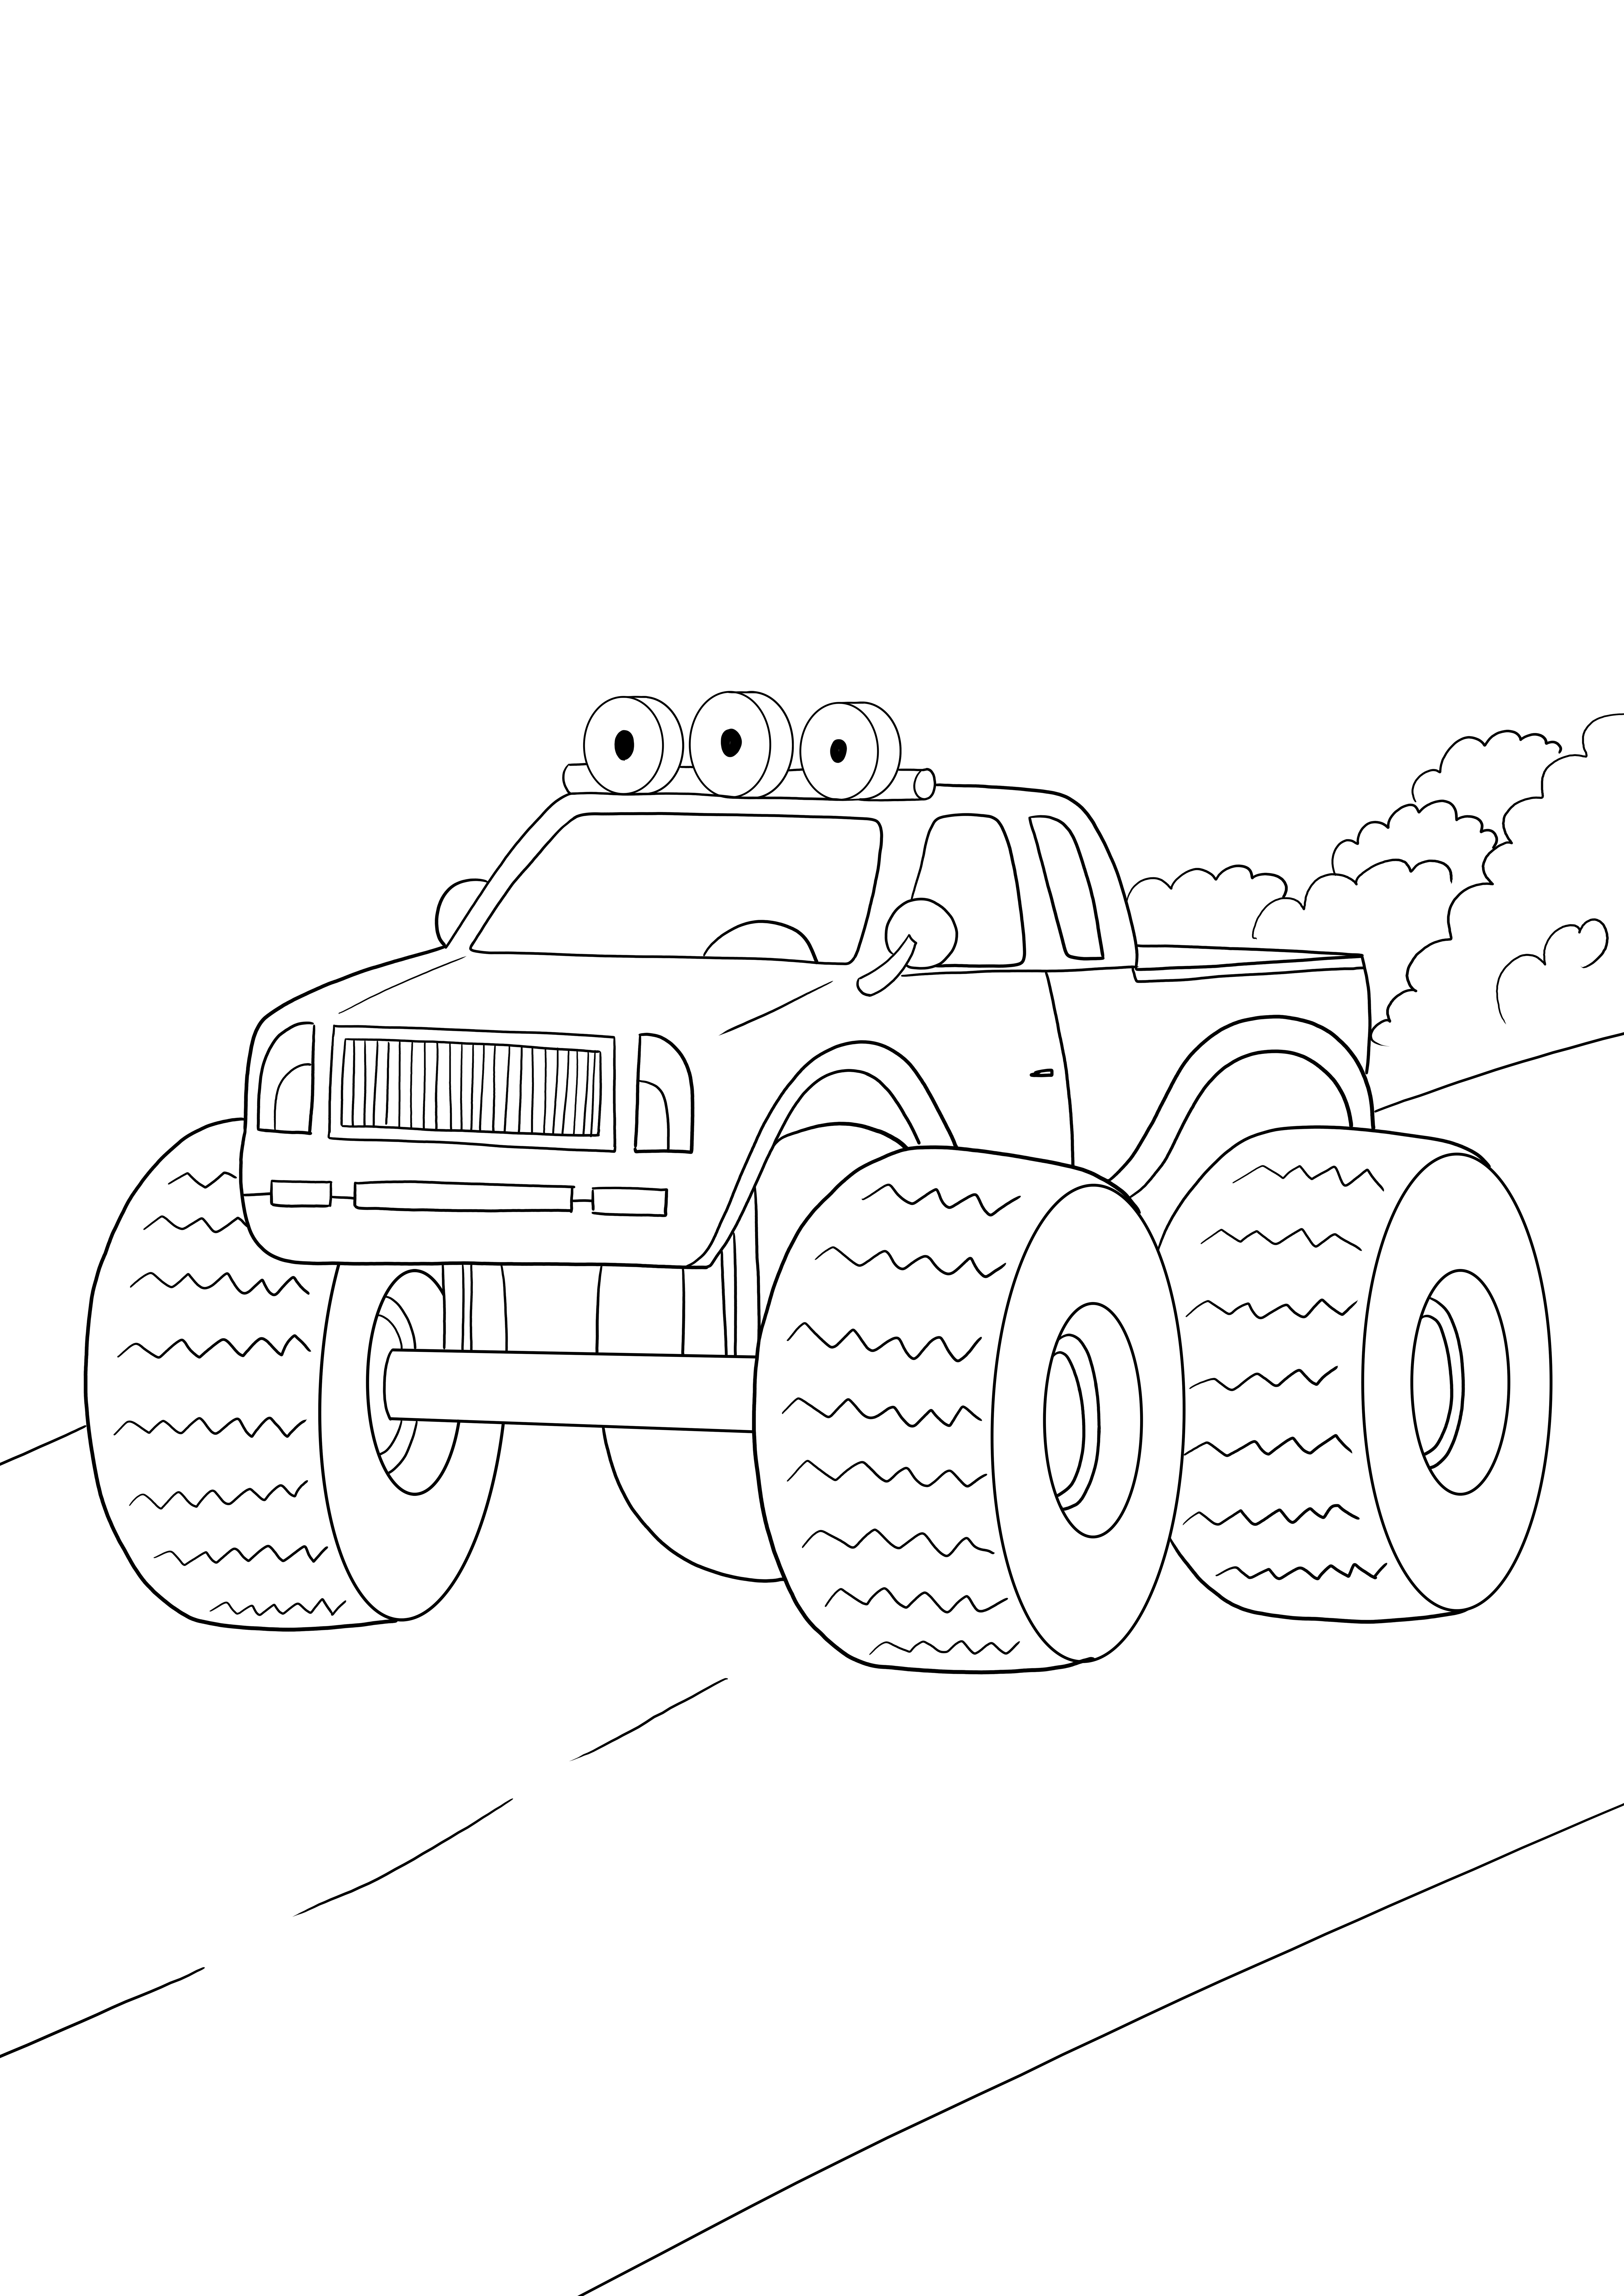 Lembar mewarnai favorit truk monster gratis untuk dicetak atau diunduh